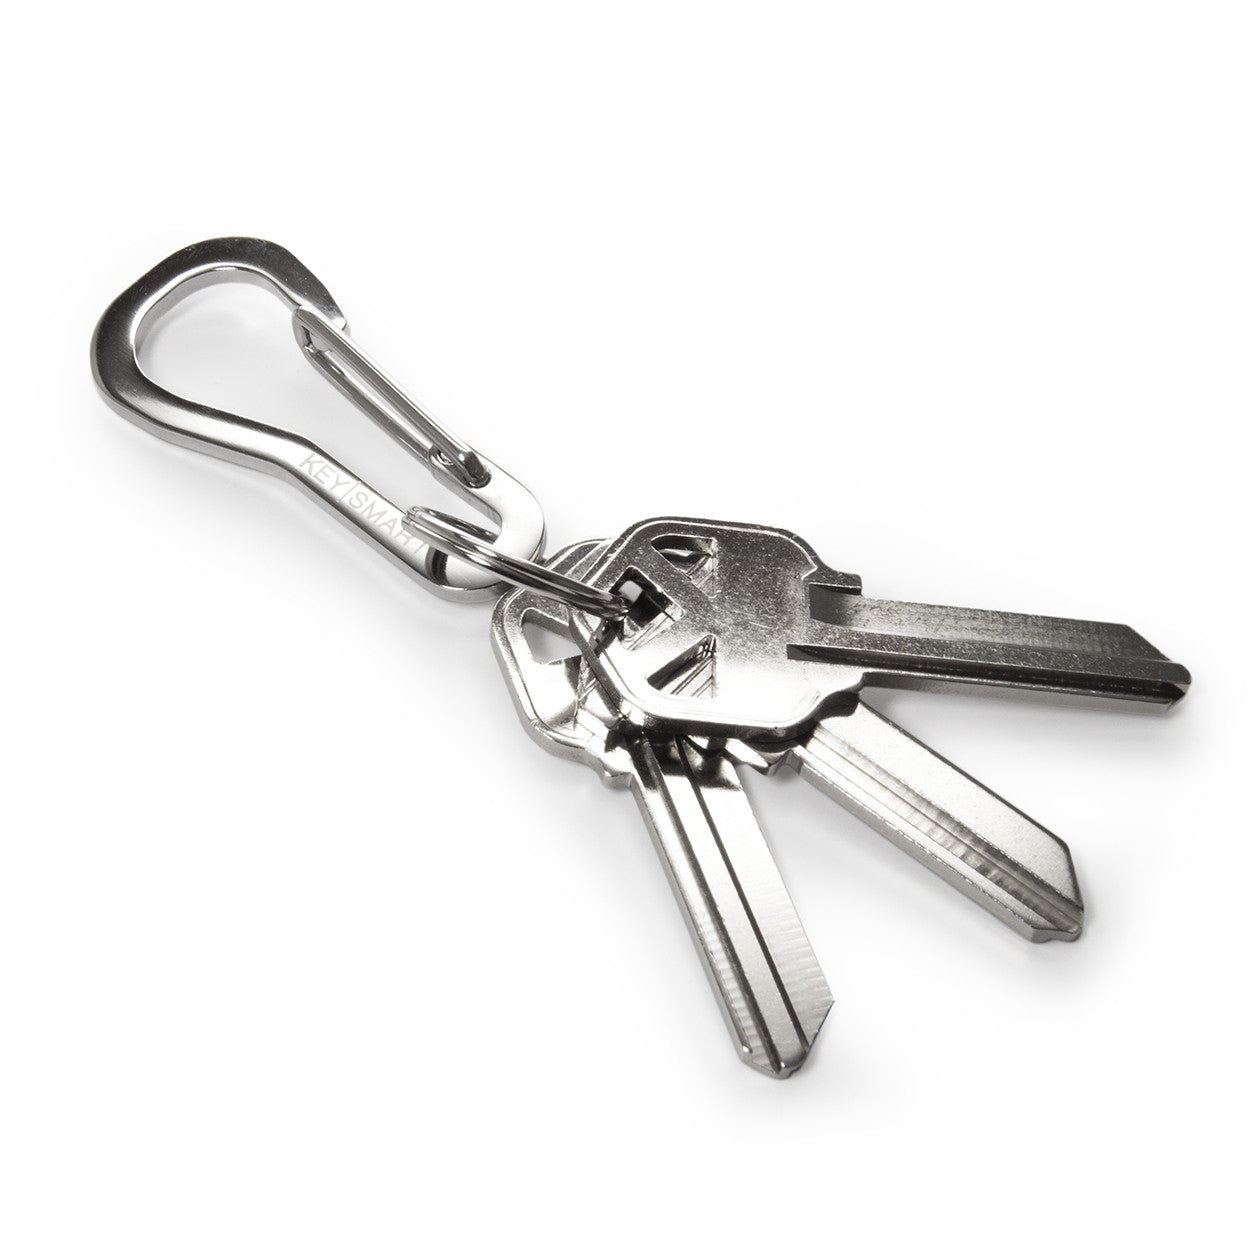 belt clip for keys